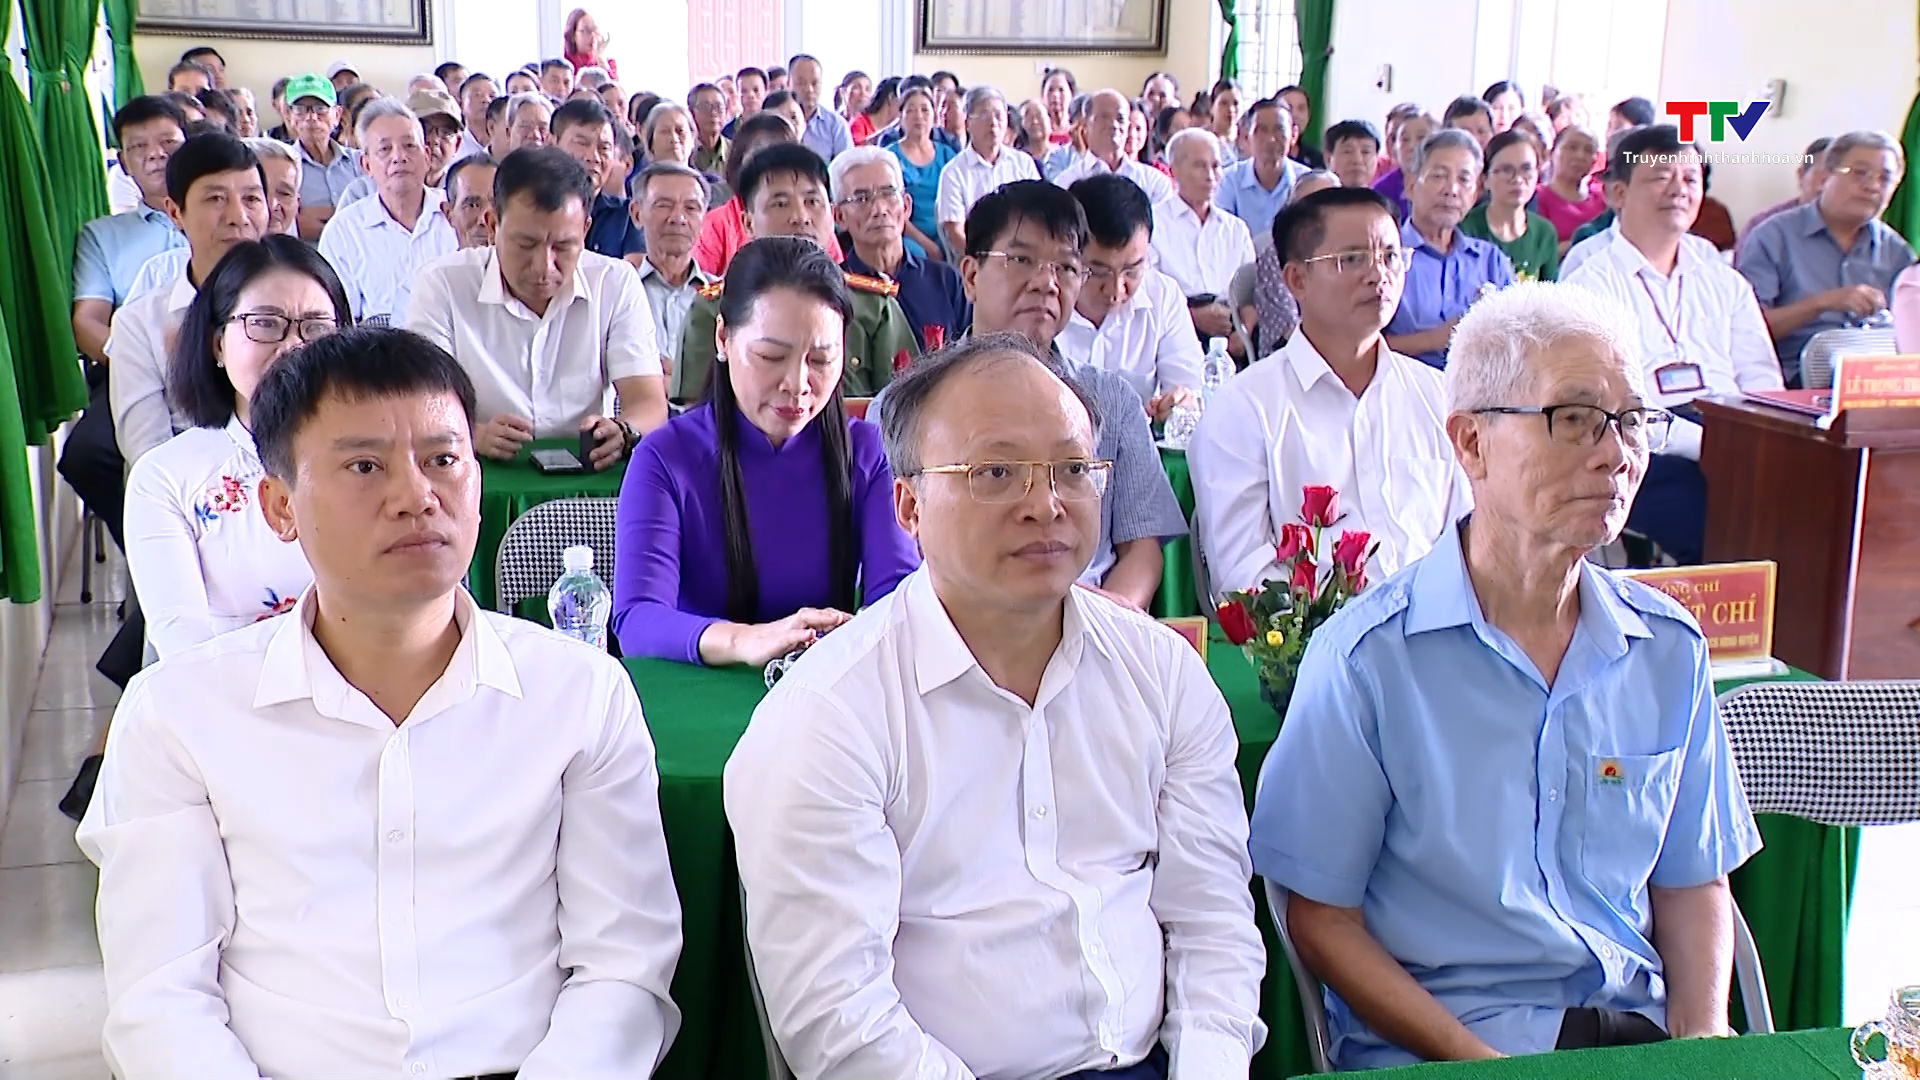 Bí thư Tỉnh ủy Đỗ Trọng Hưng dự hội nghị lấy ý kiến cử tri về việc nhập huyện Đông Sơn vào TP Thanh Hóa- Ảnh 5.